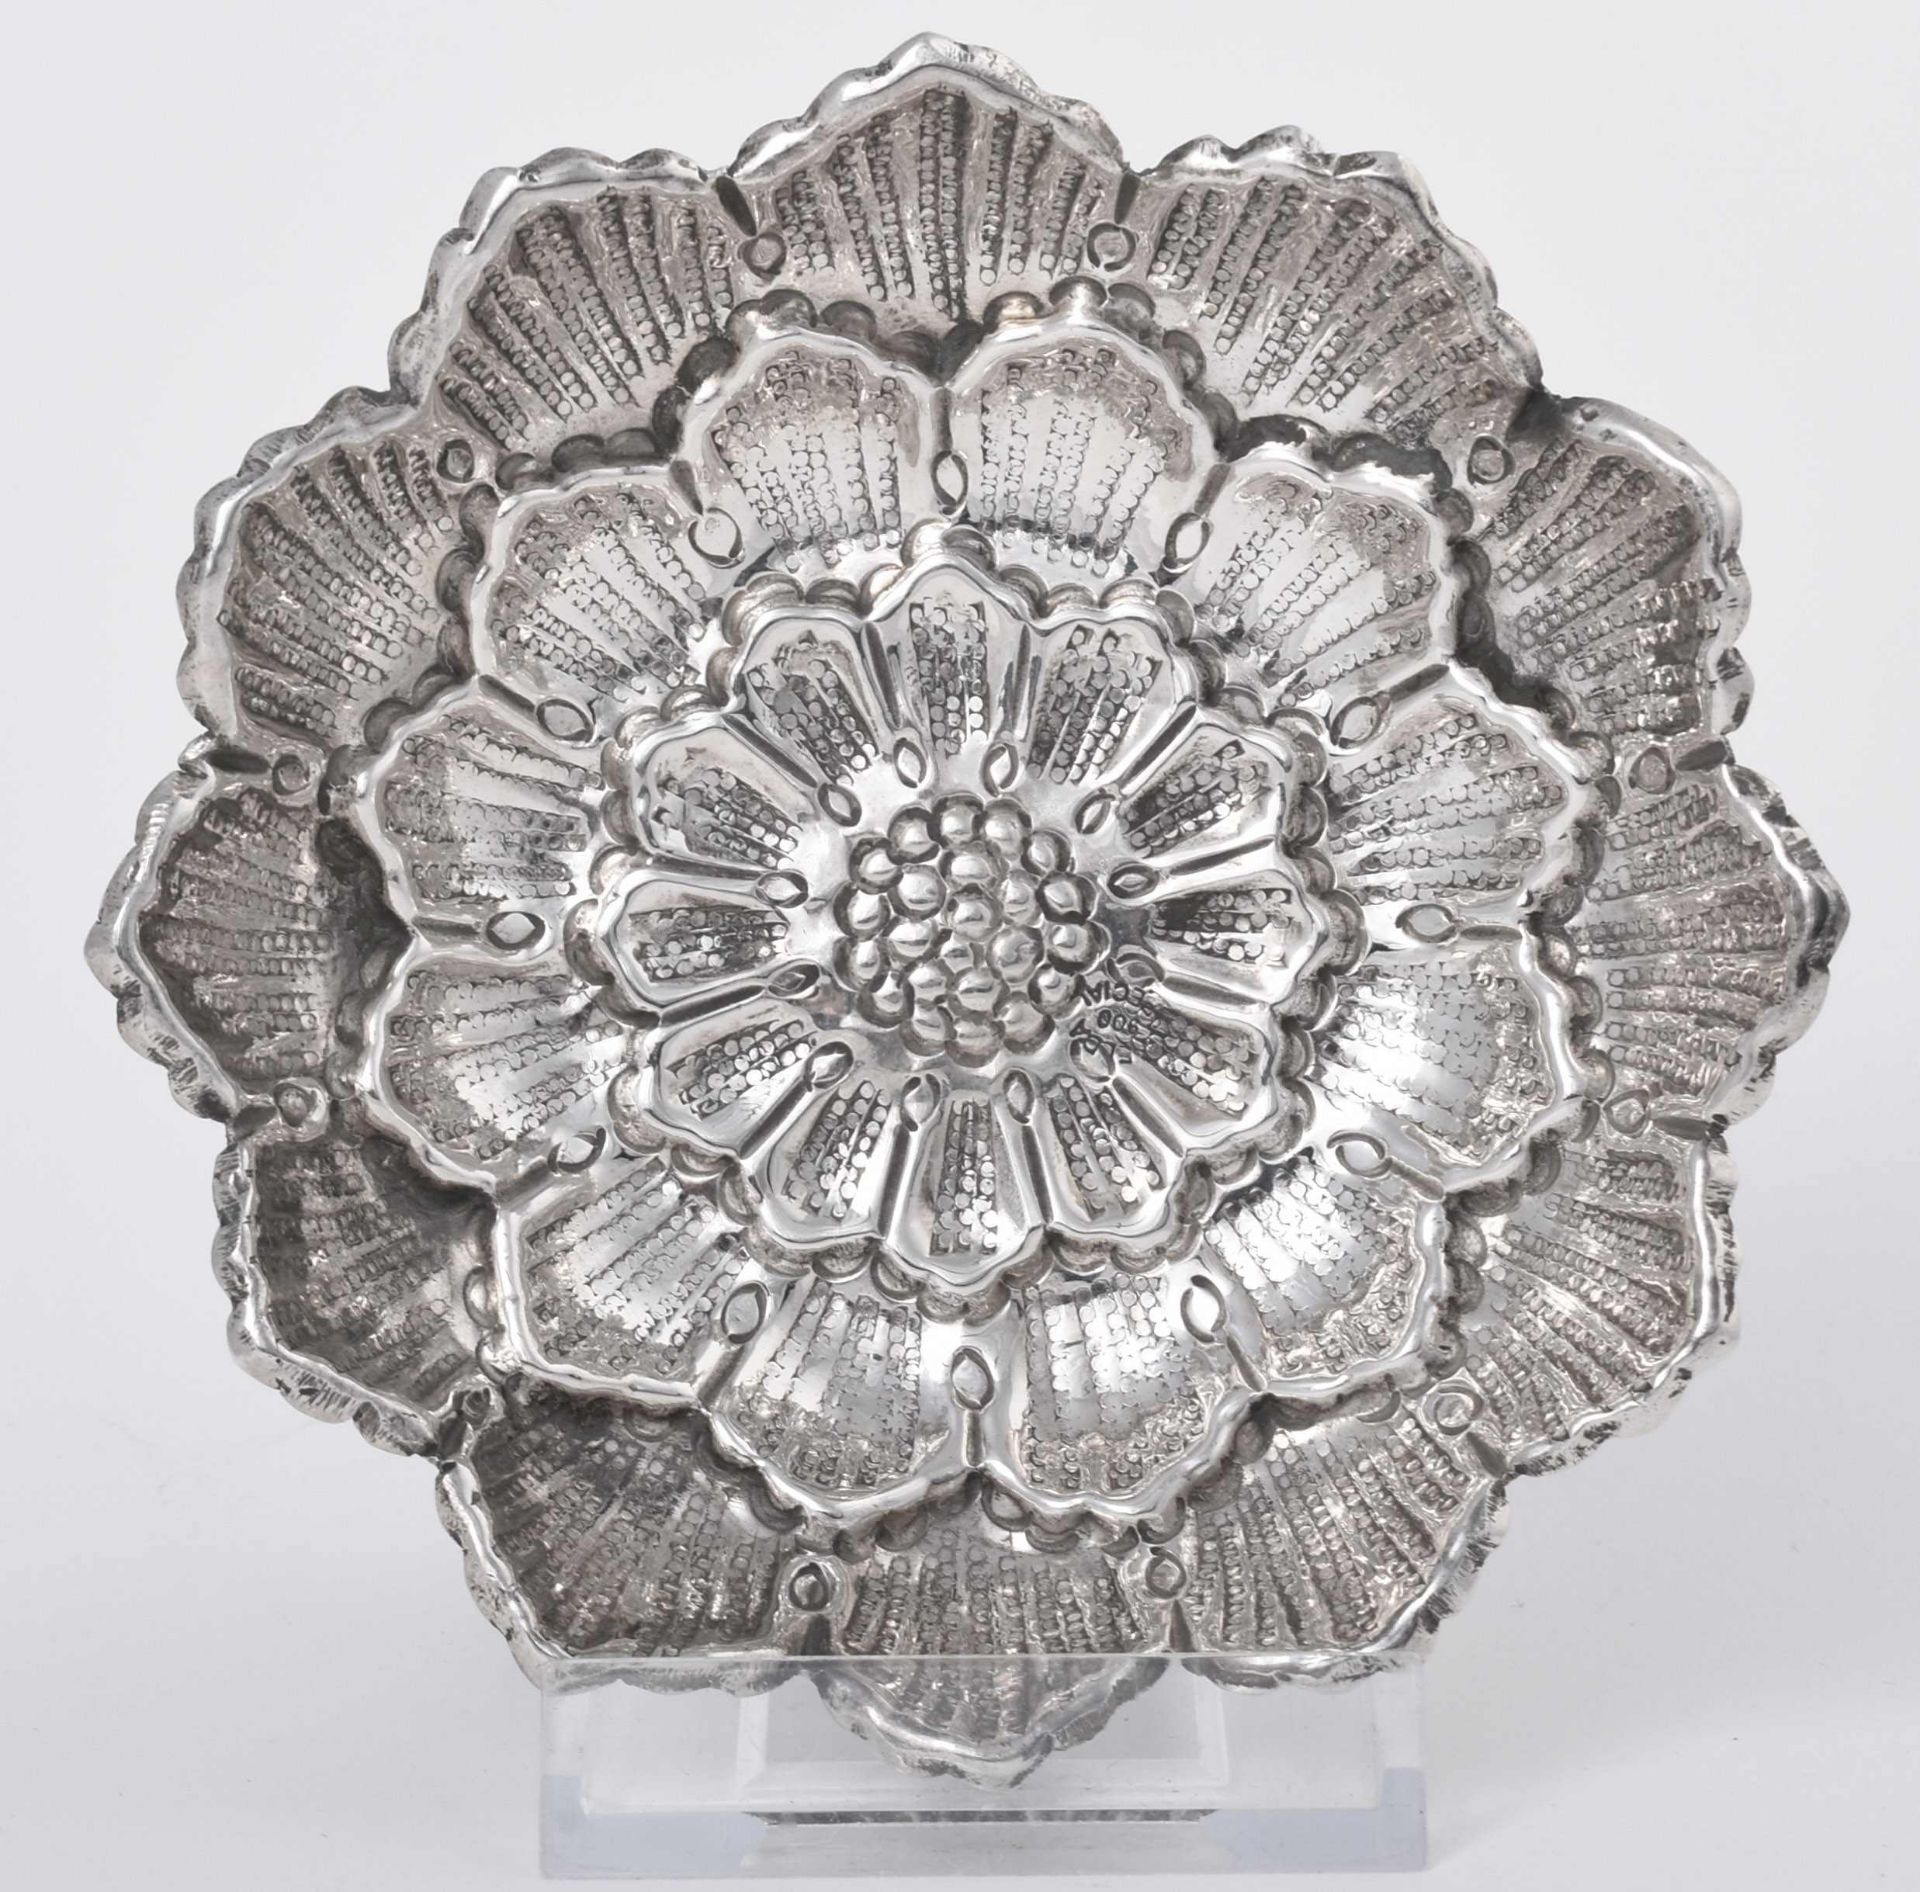 Blütenschale Silber 800, gemarkt "Melda Special", runde Grundform mit leicht gehöhltem Spiegel, - Bild 2 aus 3